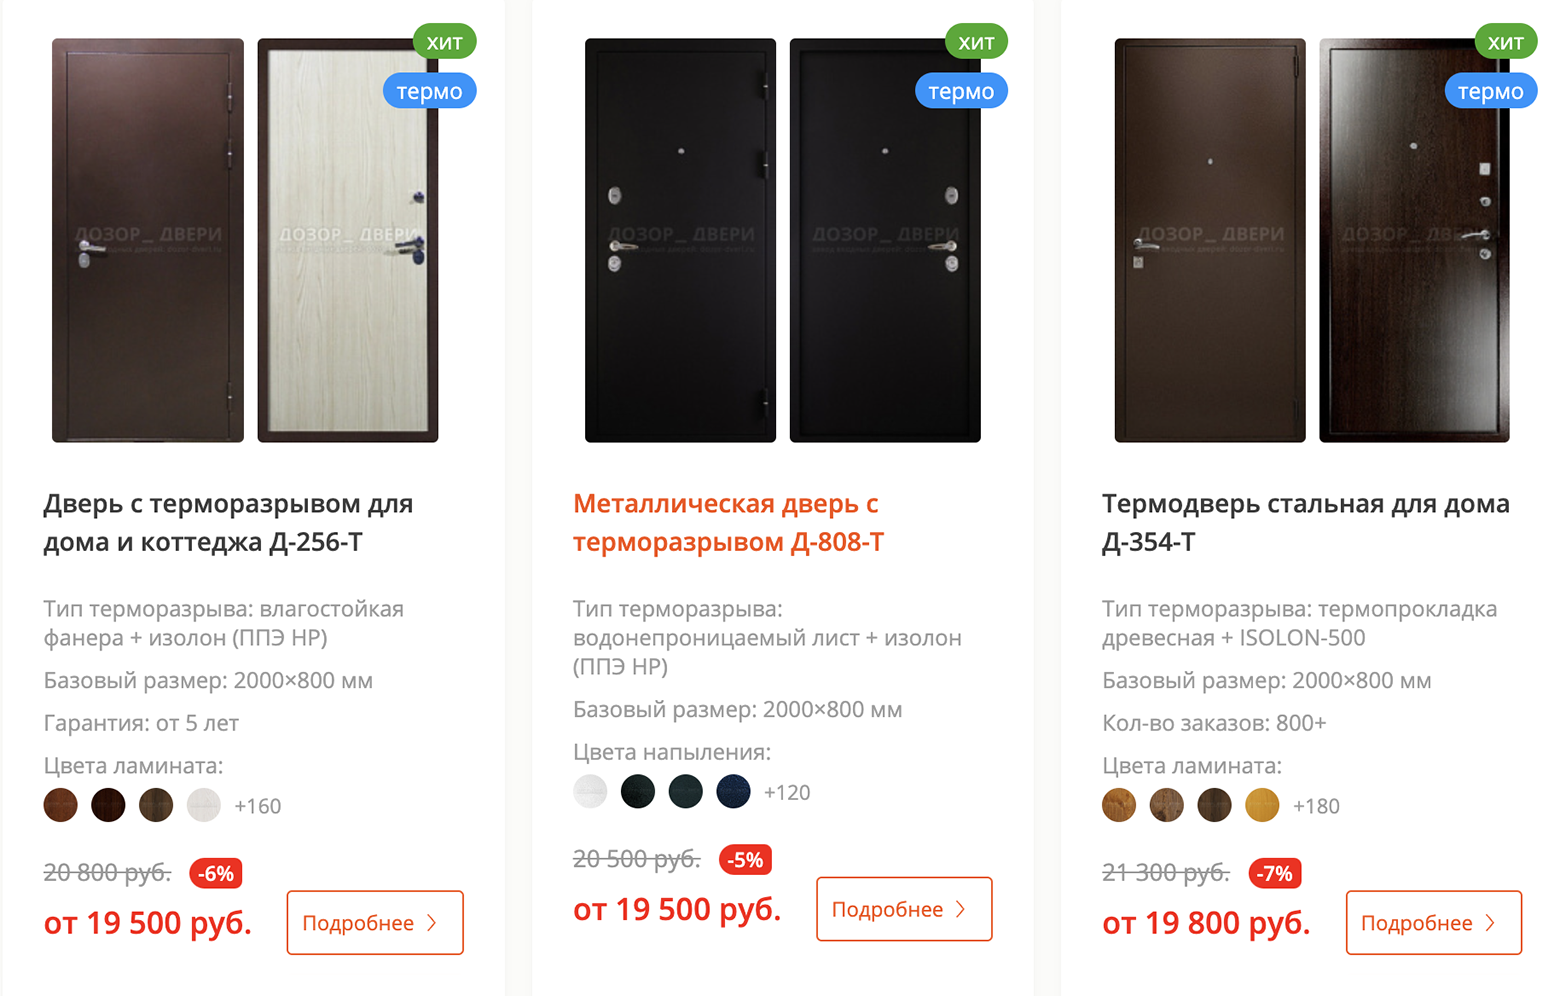 Самые простые варианты дверей с терморазрывом у того же продавца продаются от 19 500 ₽. Источник: dozor⁠-⁠dveri.ru